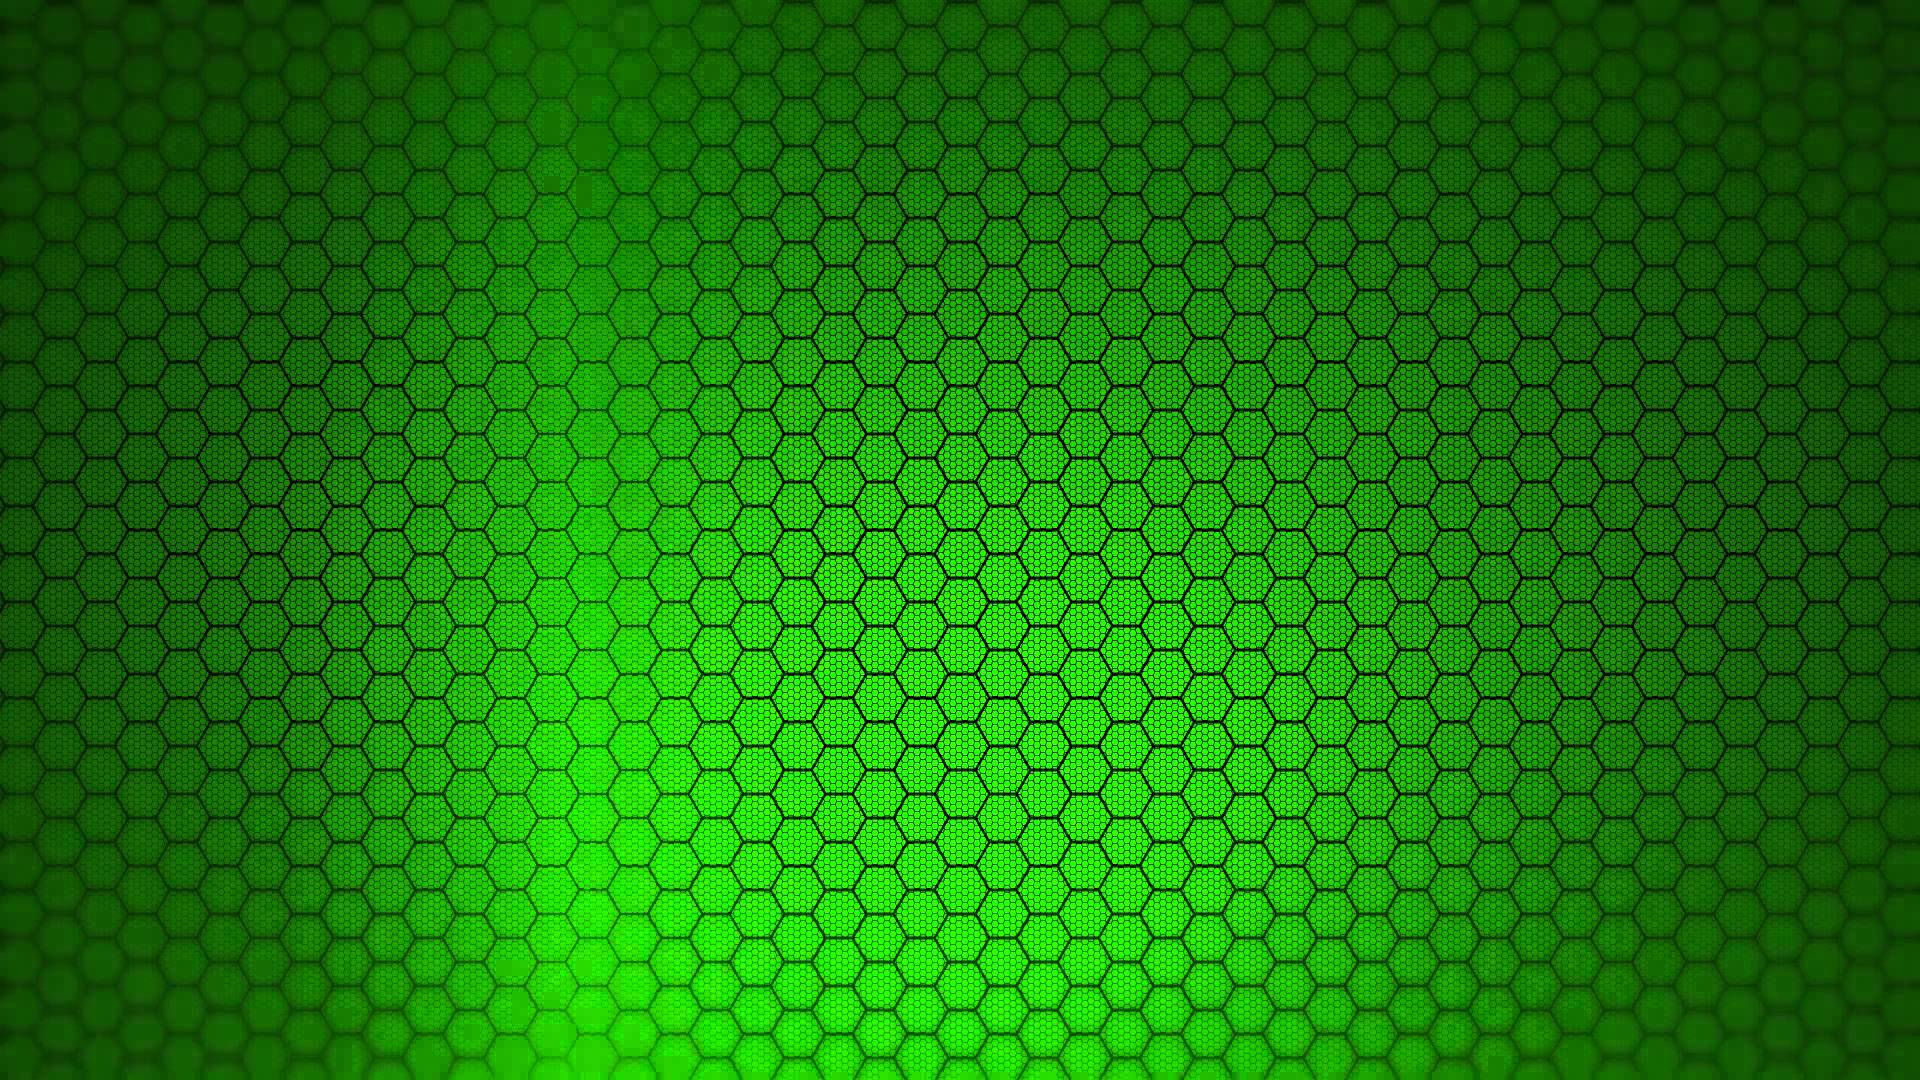 PixelsTalk.Net sẽ mang đến cho bạn hình nền độ phân giải cao với màu xanh lá cây tươi sáng nhất. Bạn sẽ được trải nghiệm hình ảnh sống động và cảm nhận được sự khác biệt từ các tấm hình nền khác.